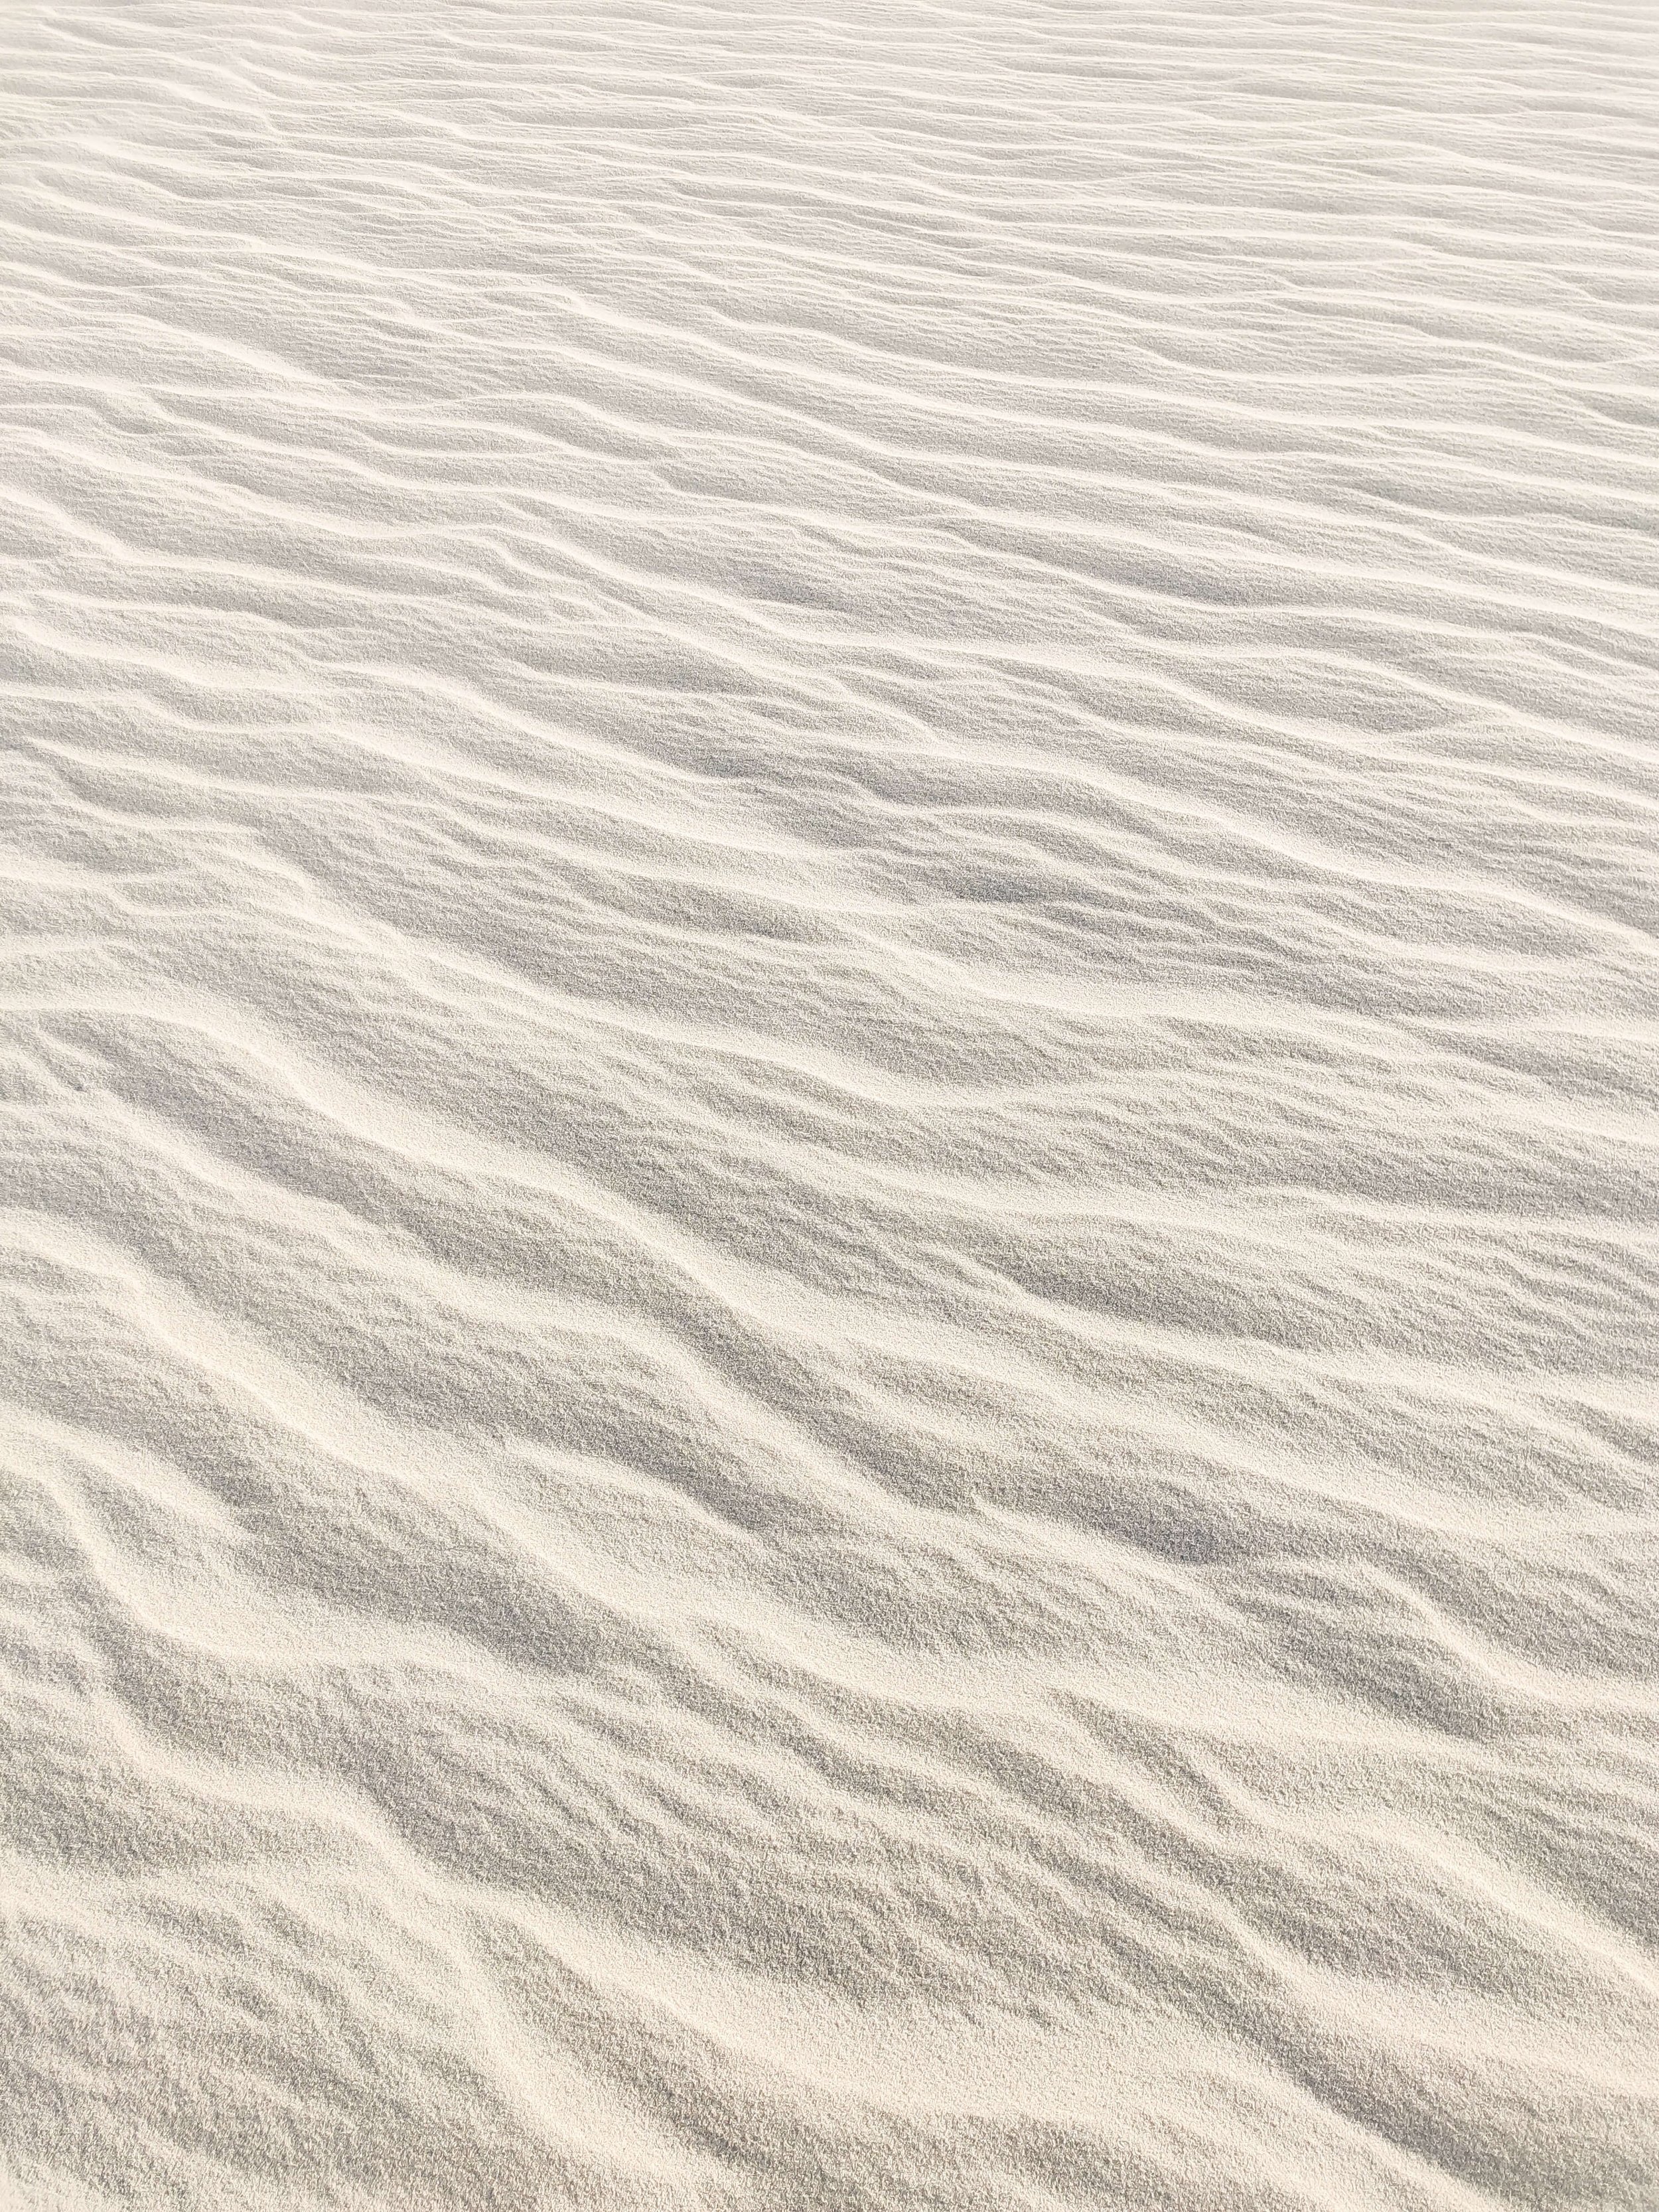 white sand.jpg